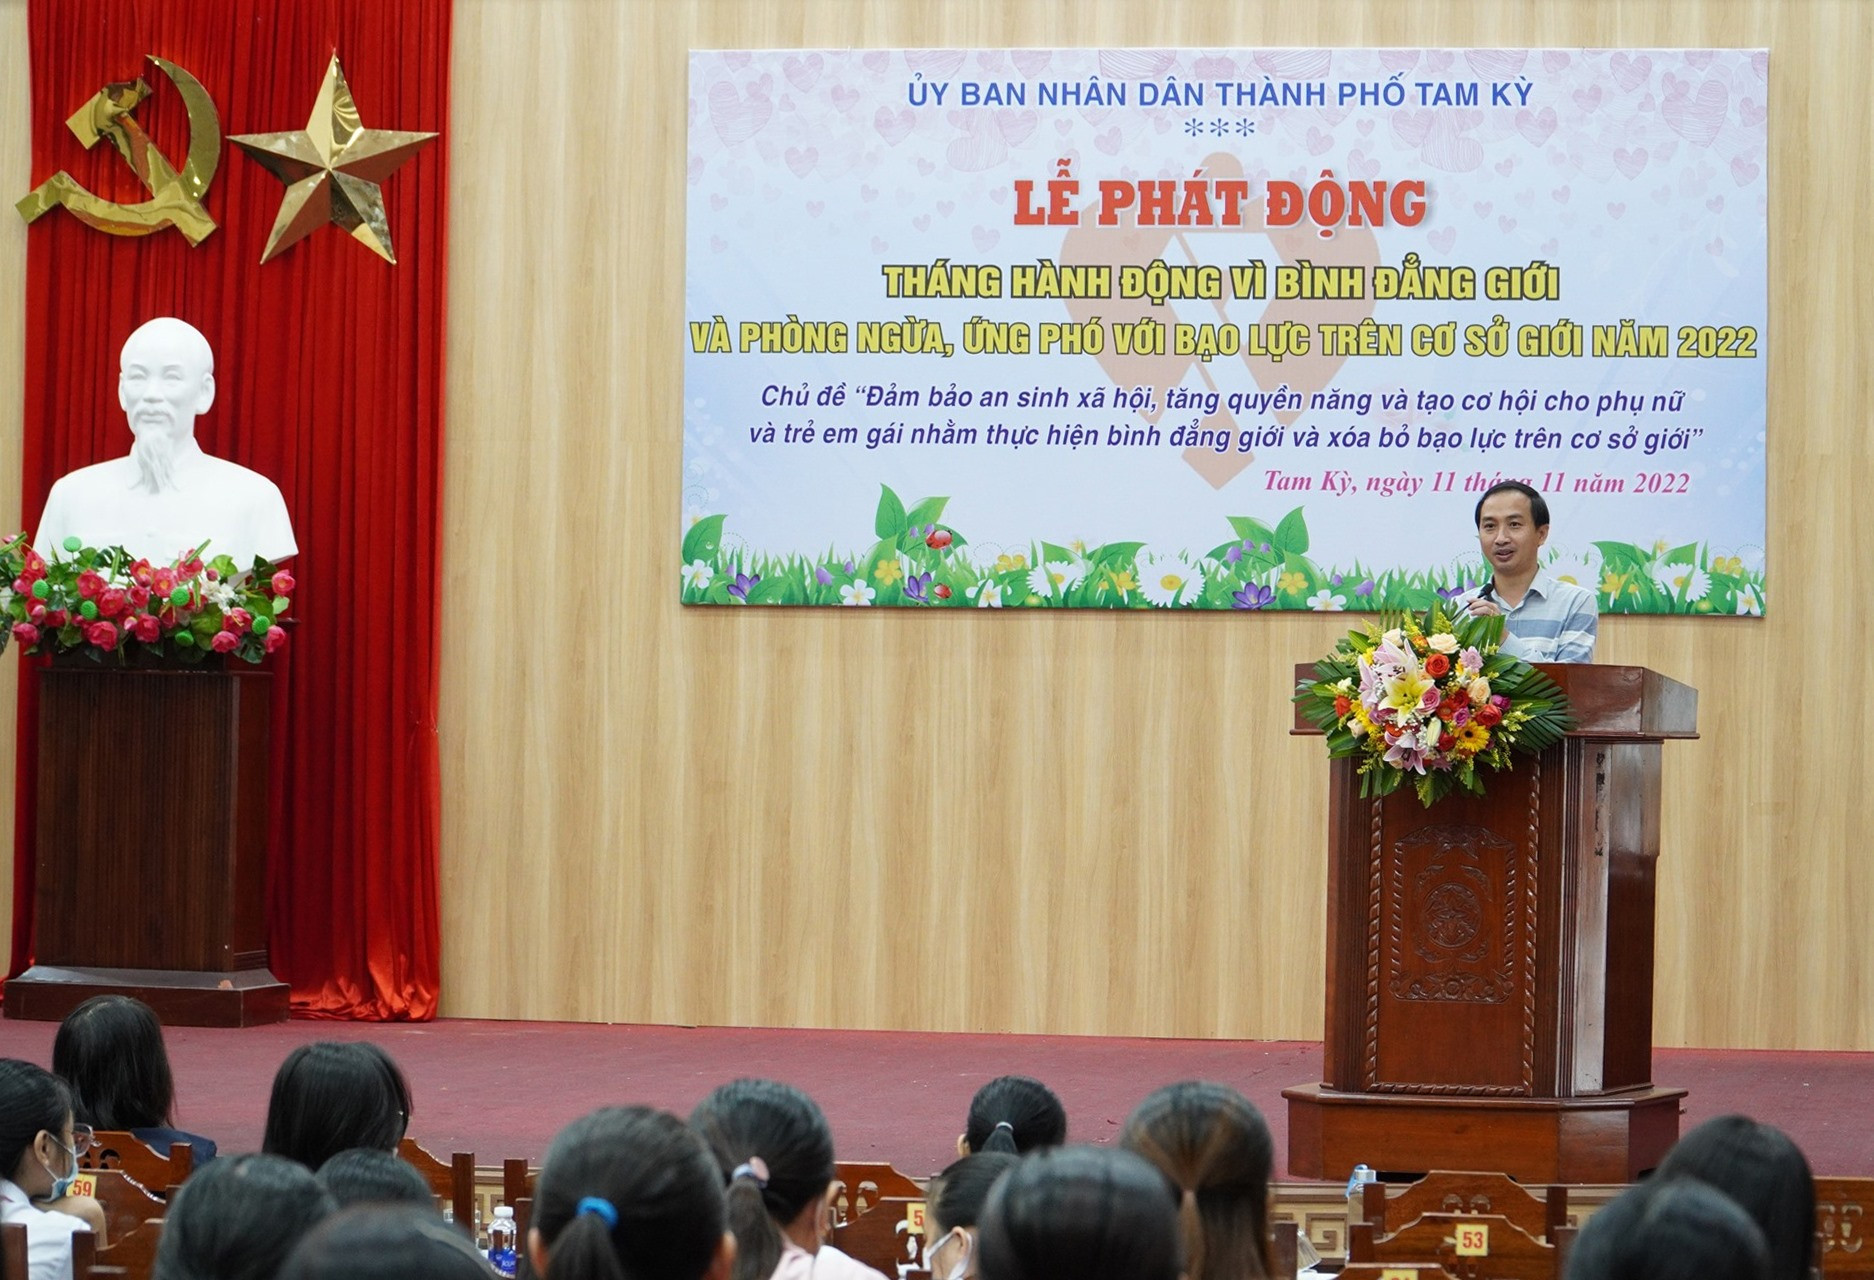 Ông Nguyễn Hồng Lai - Phó Chủ tịch UBND TP.Tam Kỳ phát biểu tại lễ phát động Tháng hành động vì bình đẳng giới và phòng ngừa, ứng phó với bạo lực gia đình trên cơ sở giới. Ảnh: H.Q